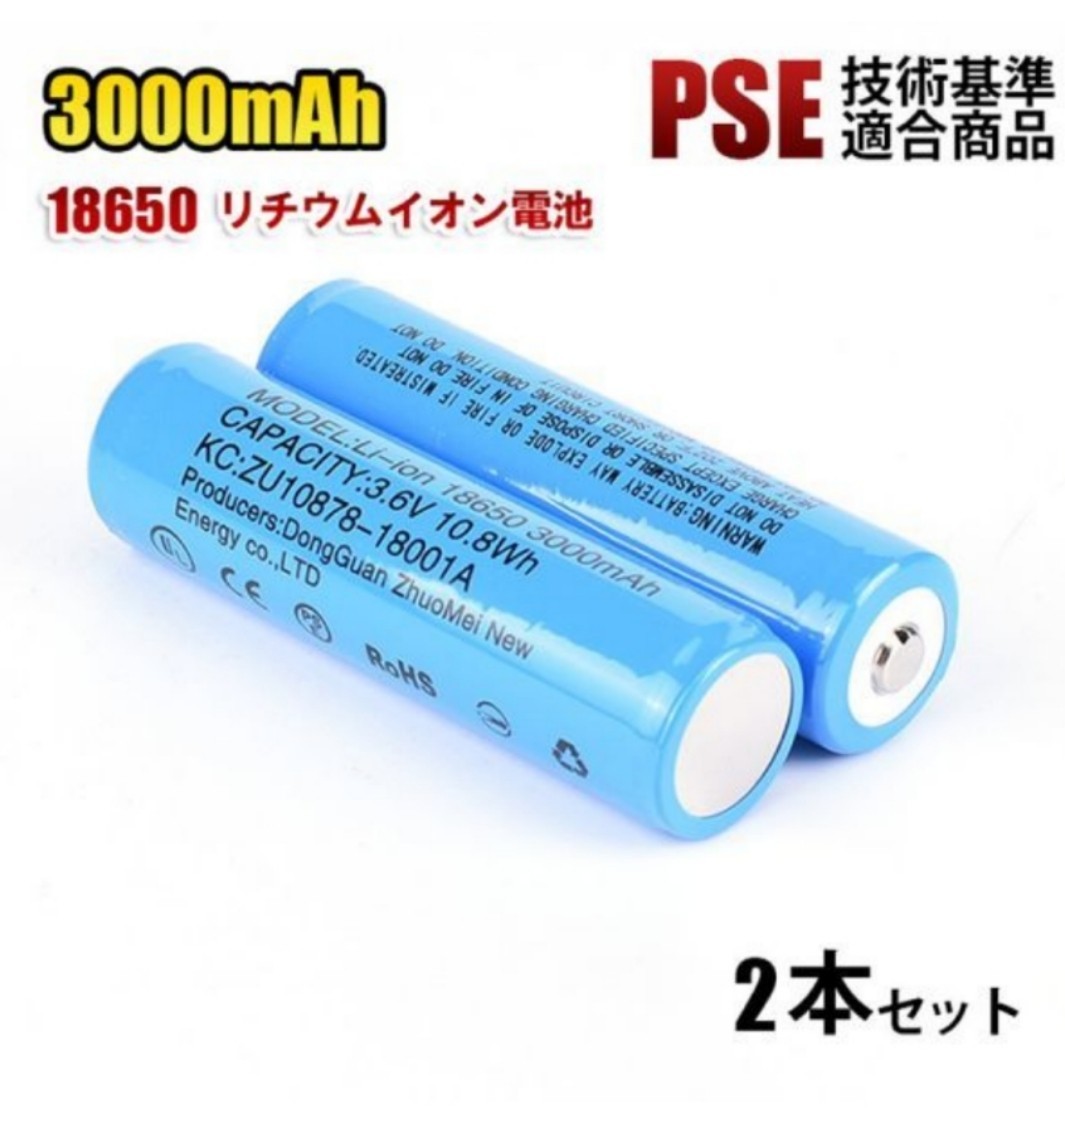 【2本セット】18650 リチウムイオン電池 バッテリー 2本セット 高容量 3000mAh 3.6V PSE認証_画像1